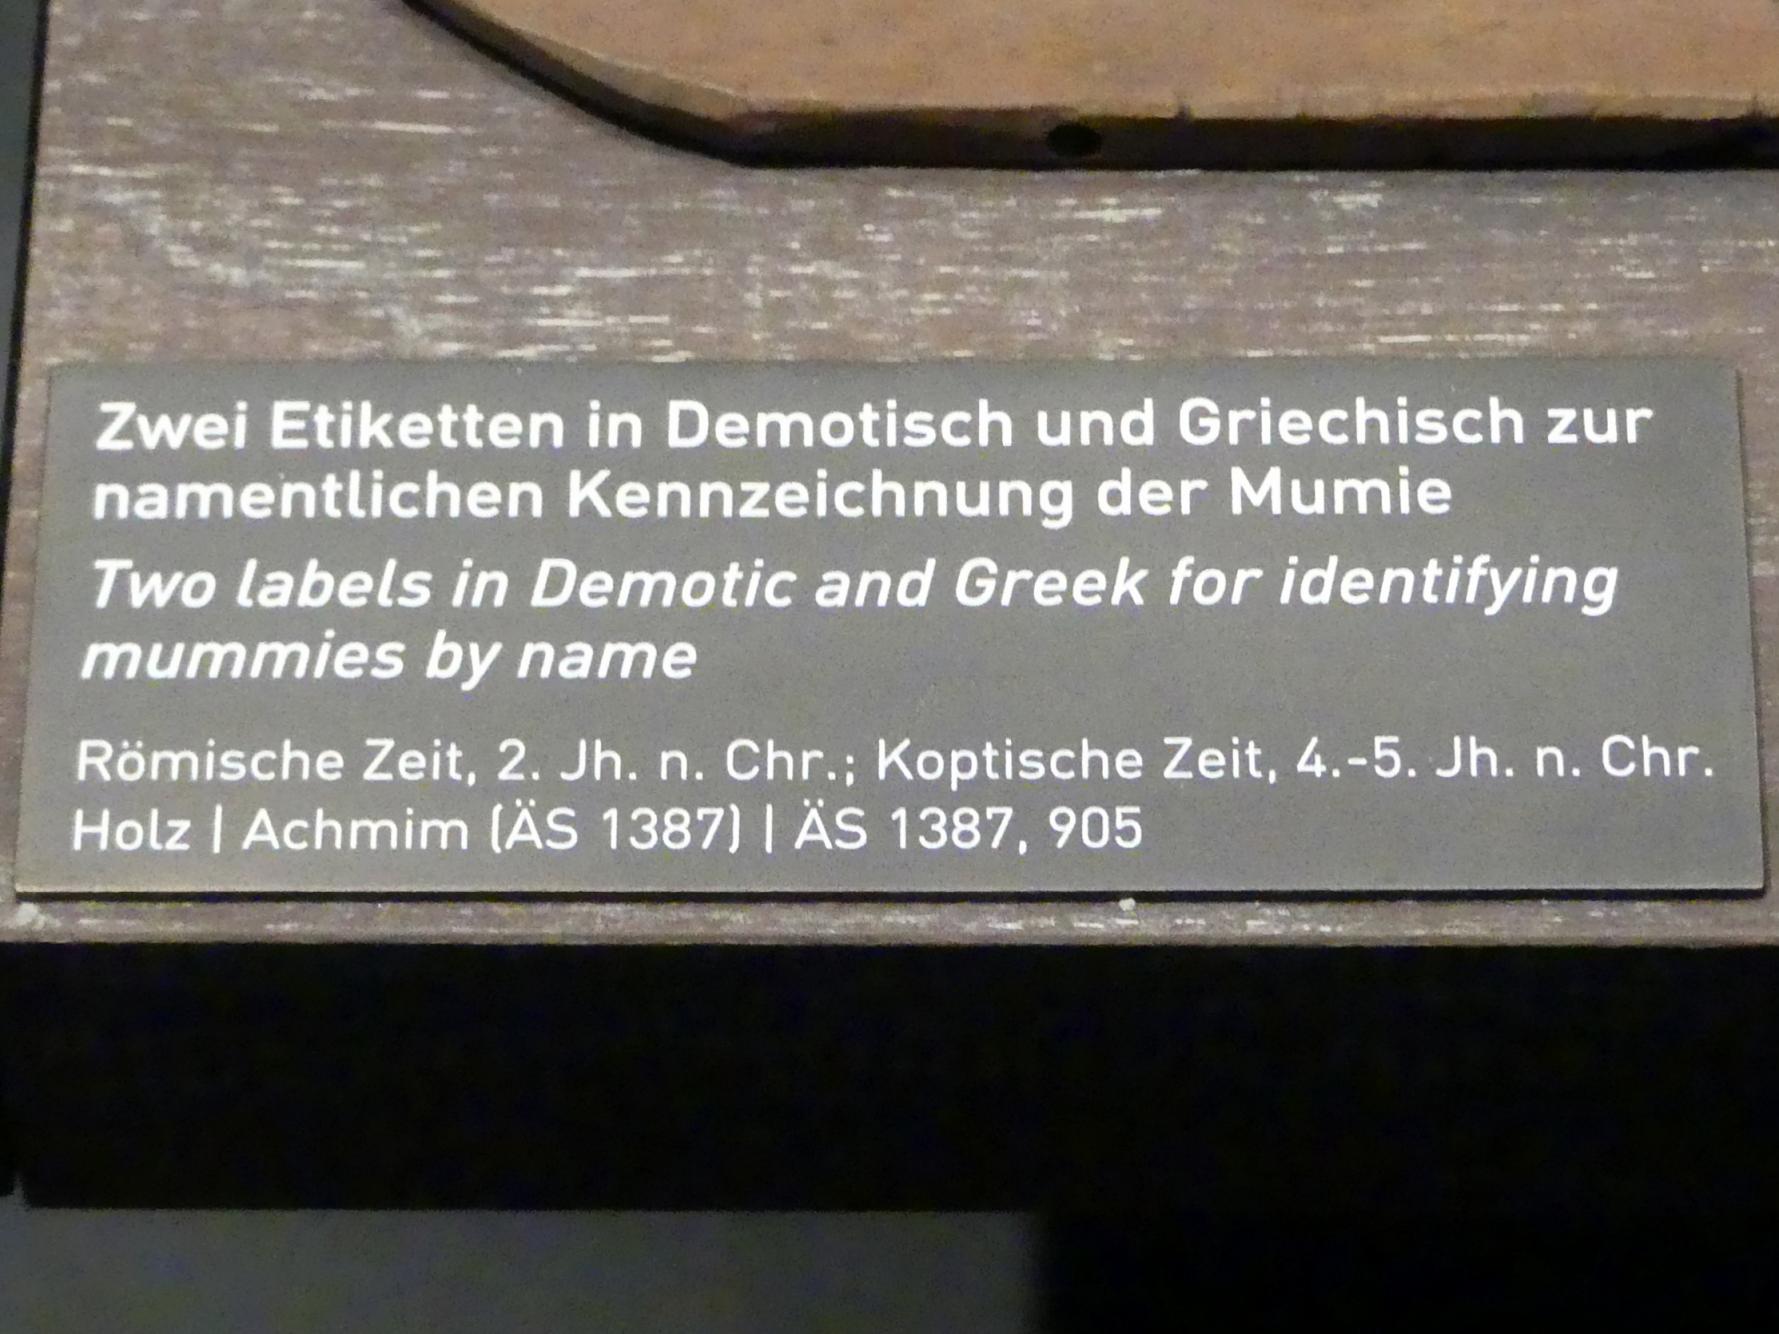 Etikette in Griechisch zur namentlichen Kennzeichnung einer Mumie, Koptische Zeit, 200 - 800, 400 - 600, Bild 2/2